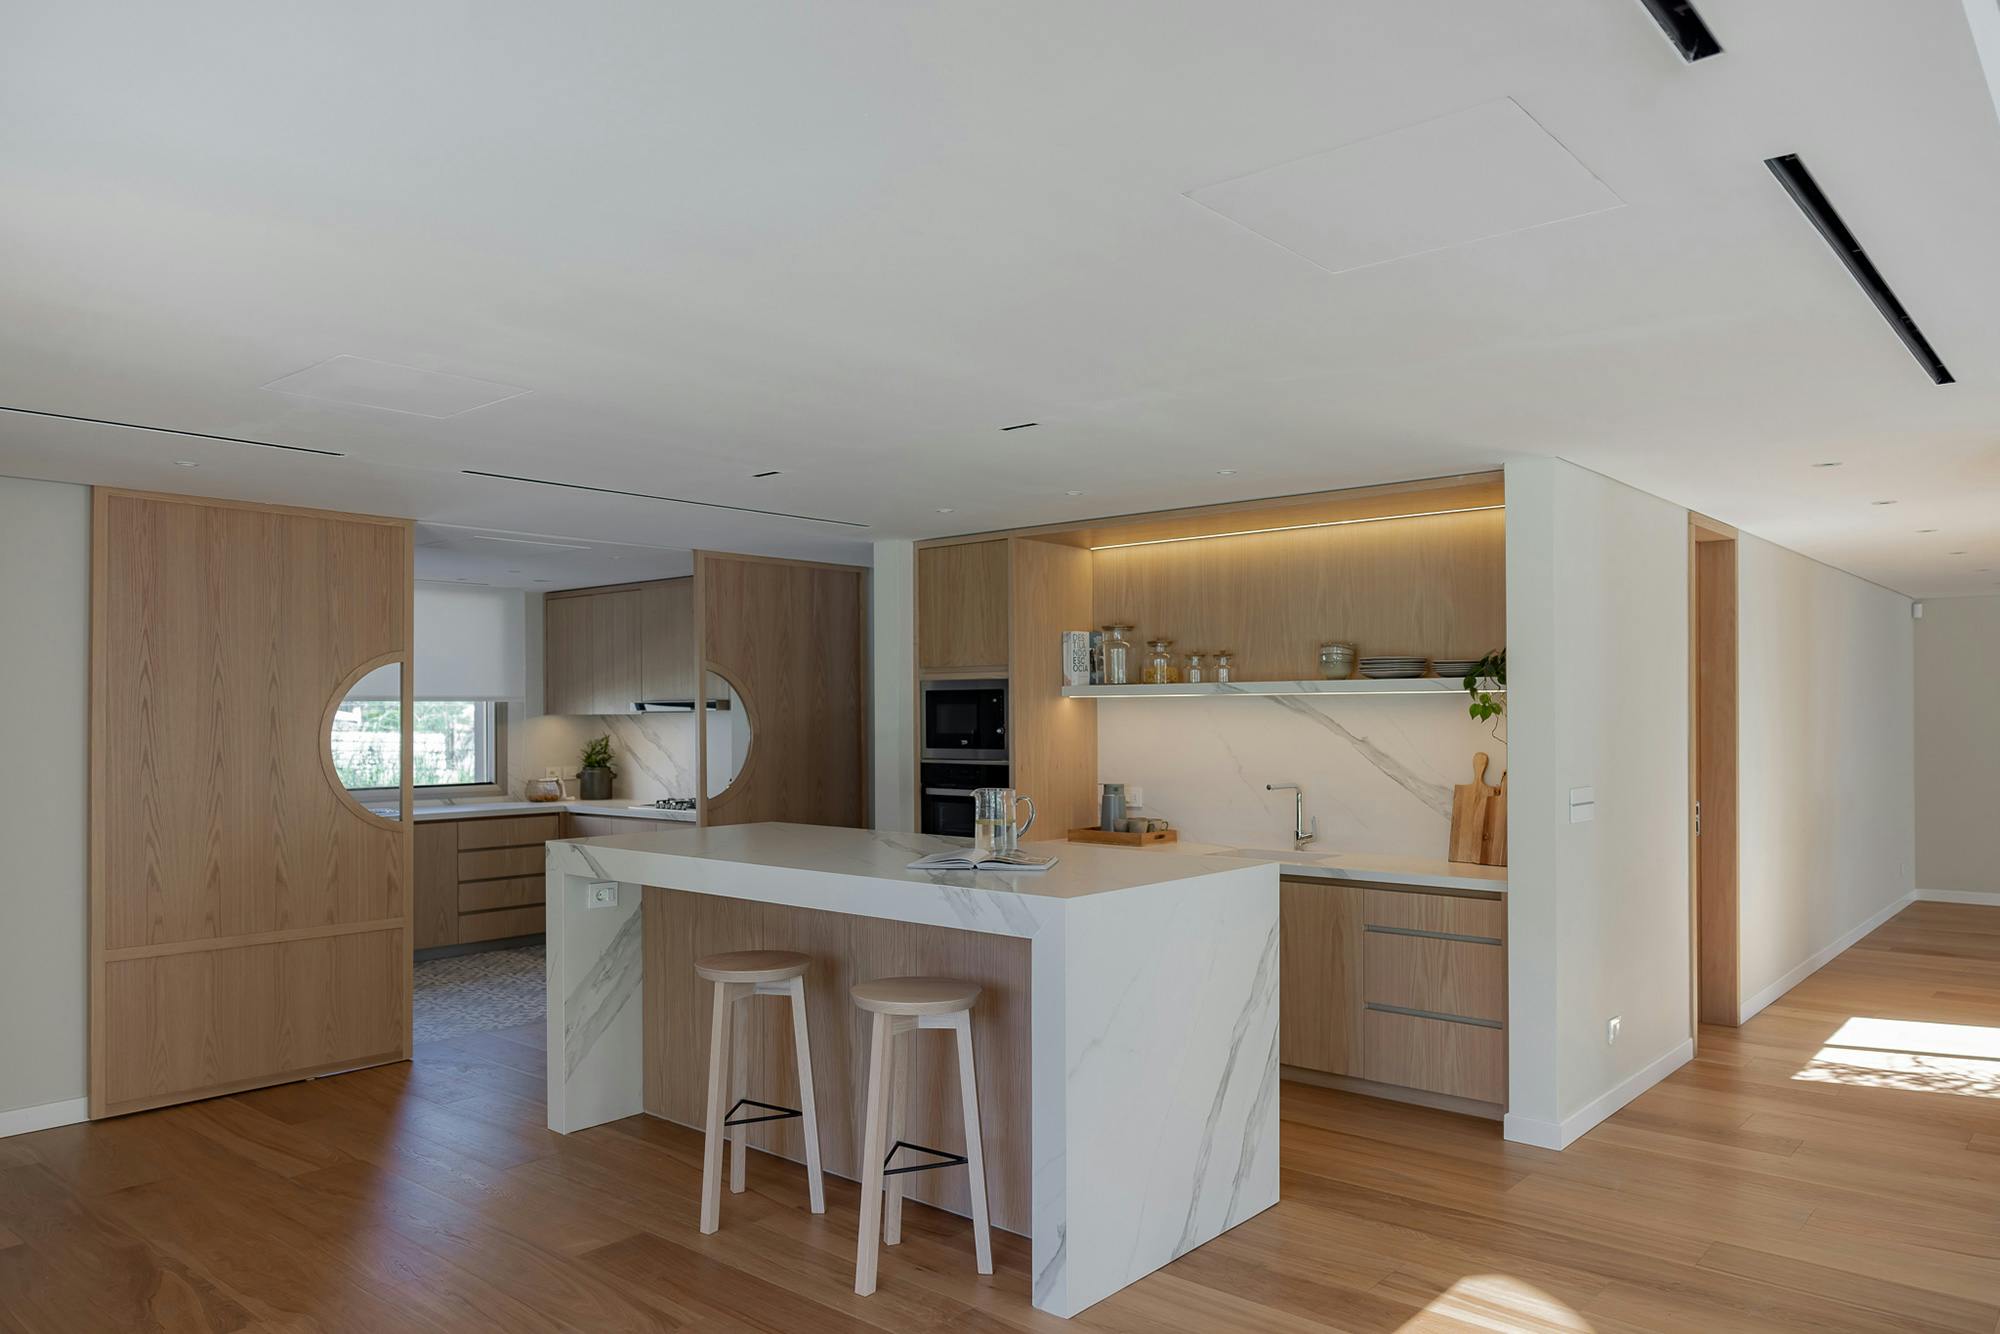 Numero immagine 37 della sezione corrente di Oliver Goettling's futuristic kitchen: design and funcionality in limited spaces di Cosentino Italia